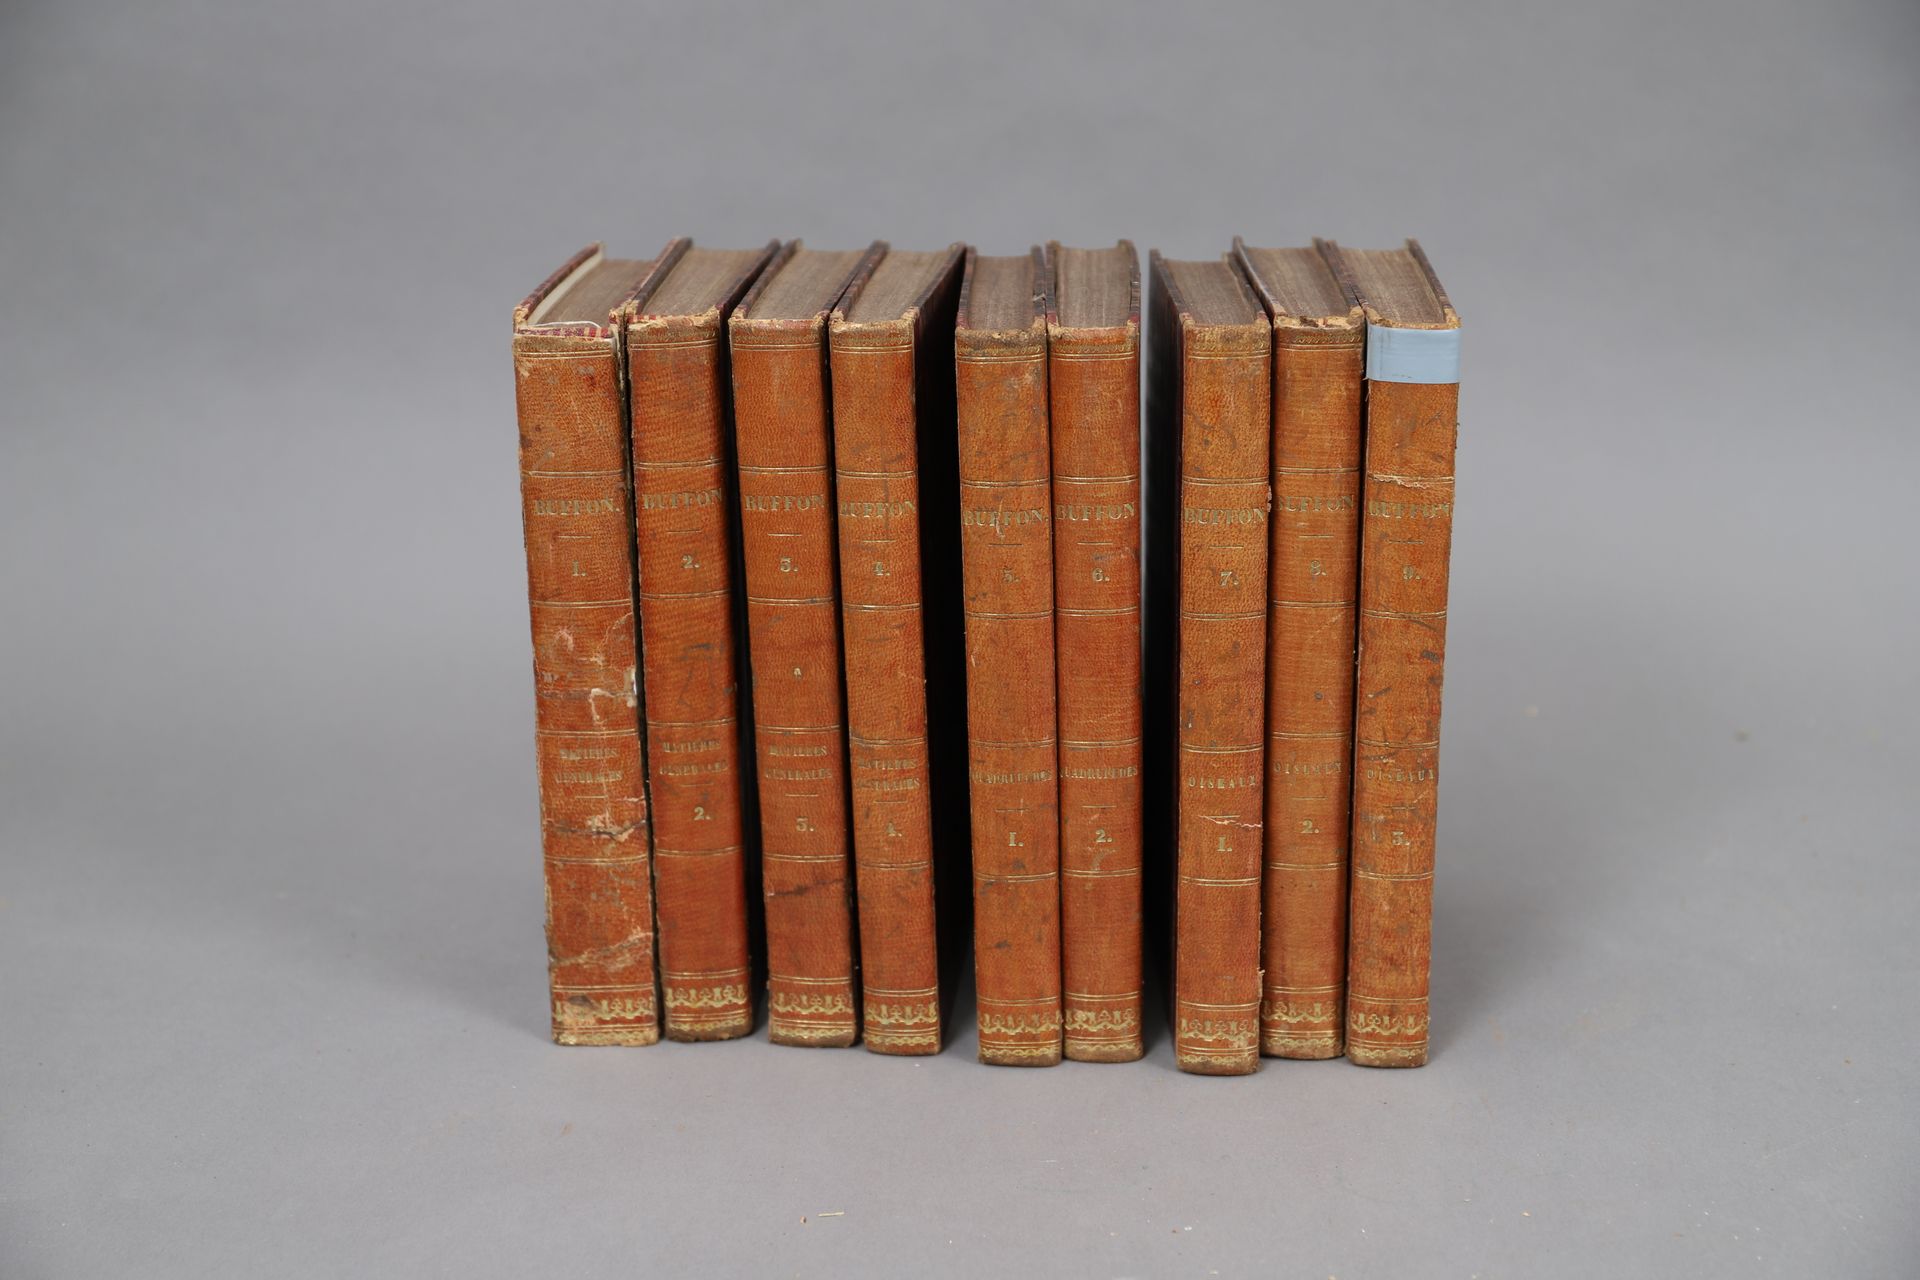 Null BUFFON'S WORKS

Paris 1835, 

9 gebundene Bände.